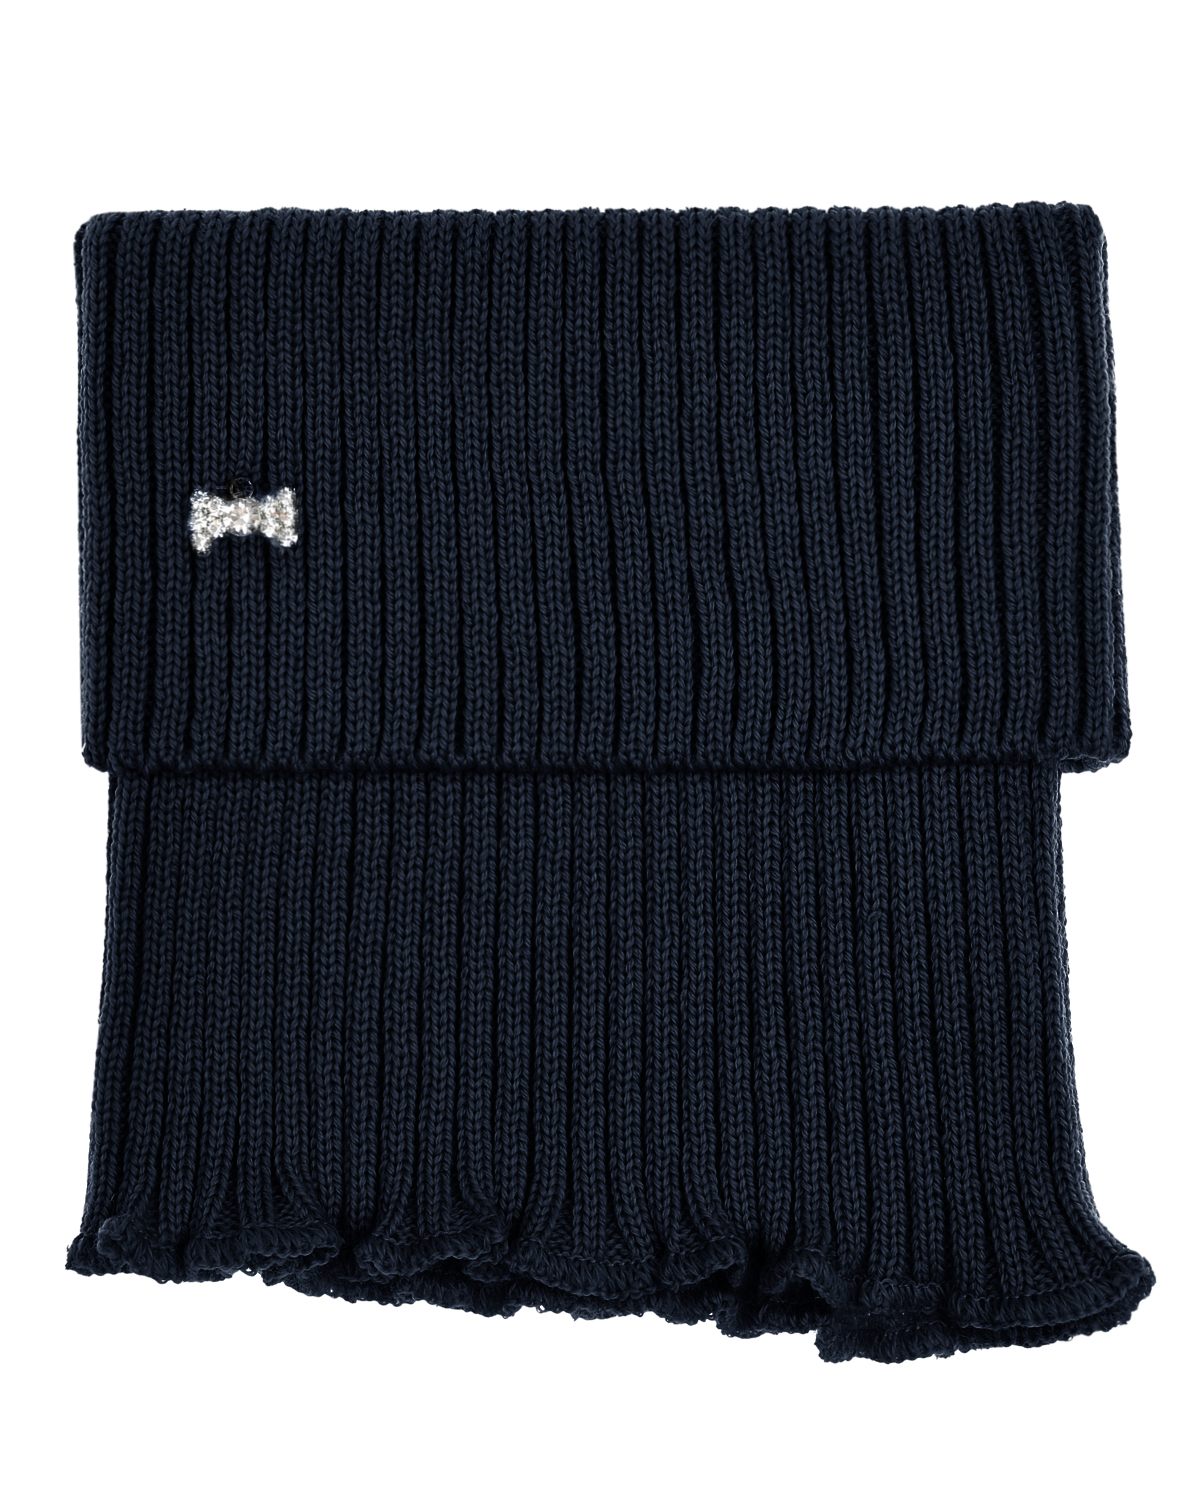 Темно-синий шарф-горло с бантом из страз MaxiMo детское, размер 1